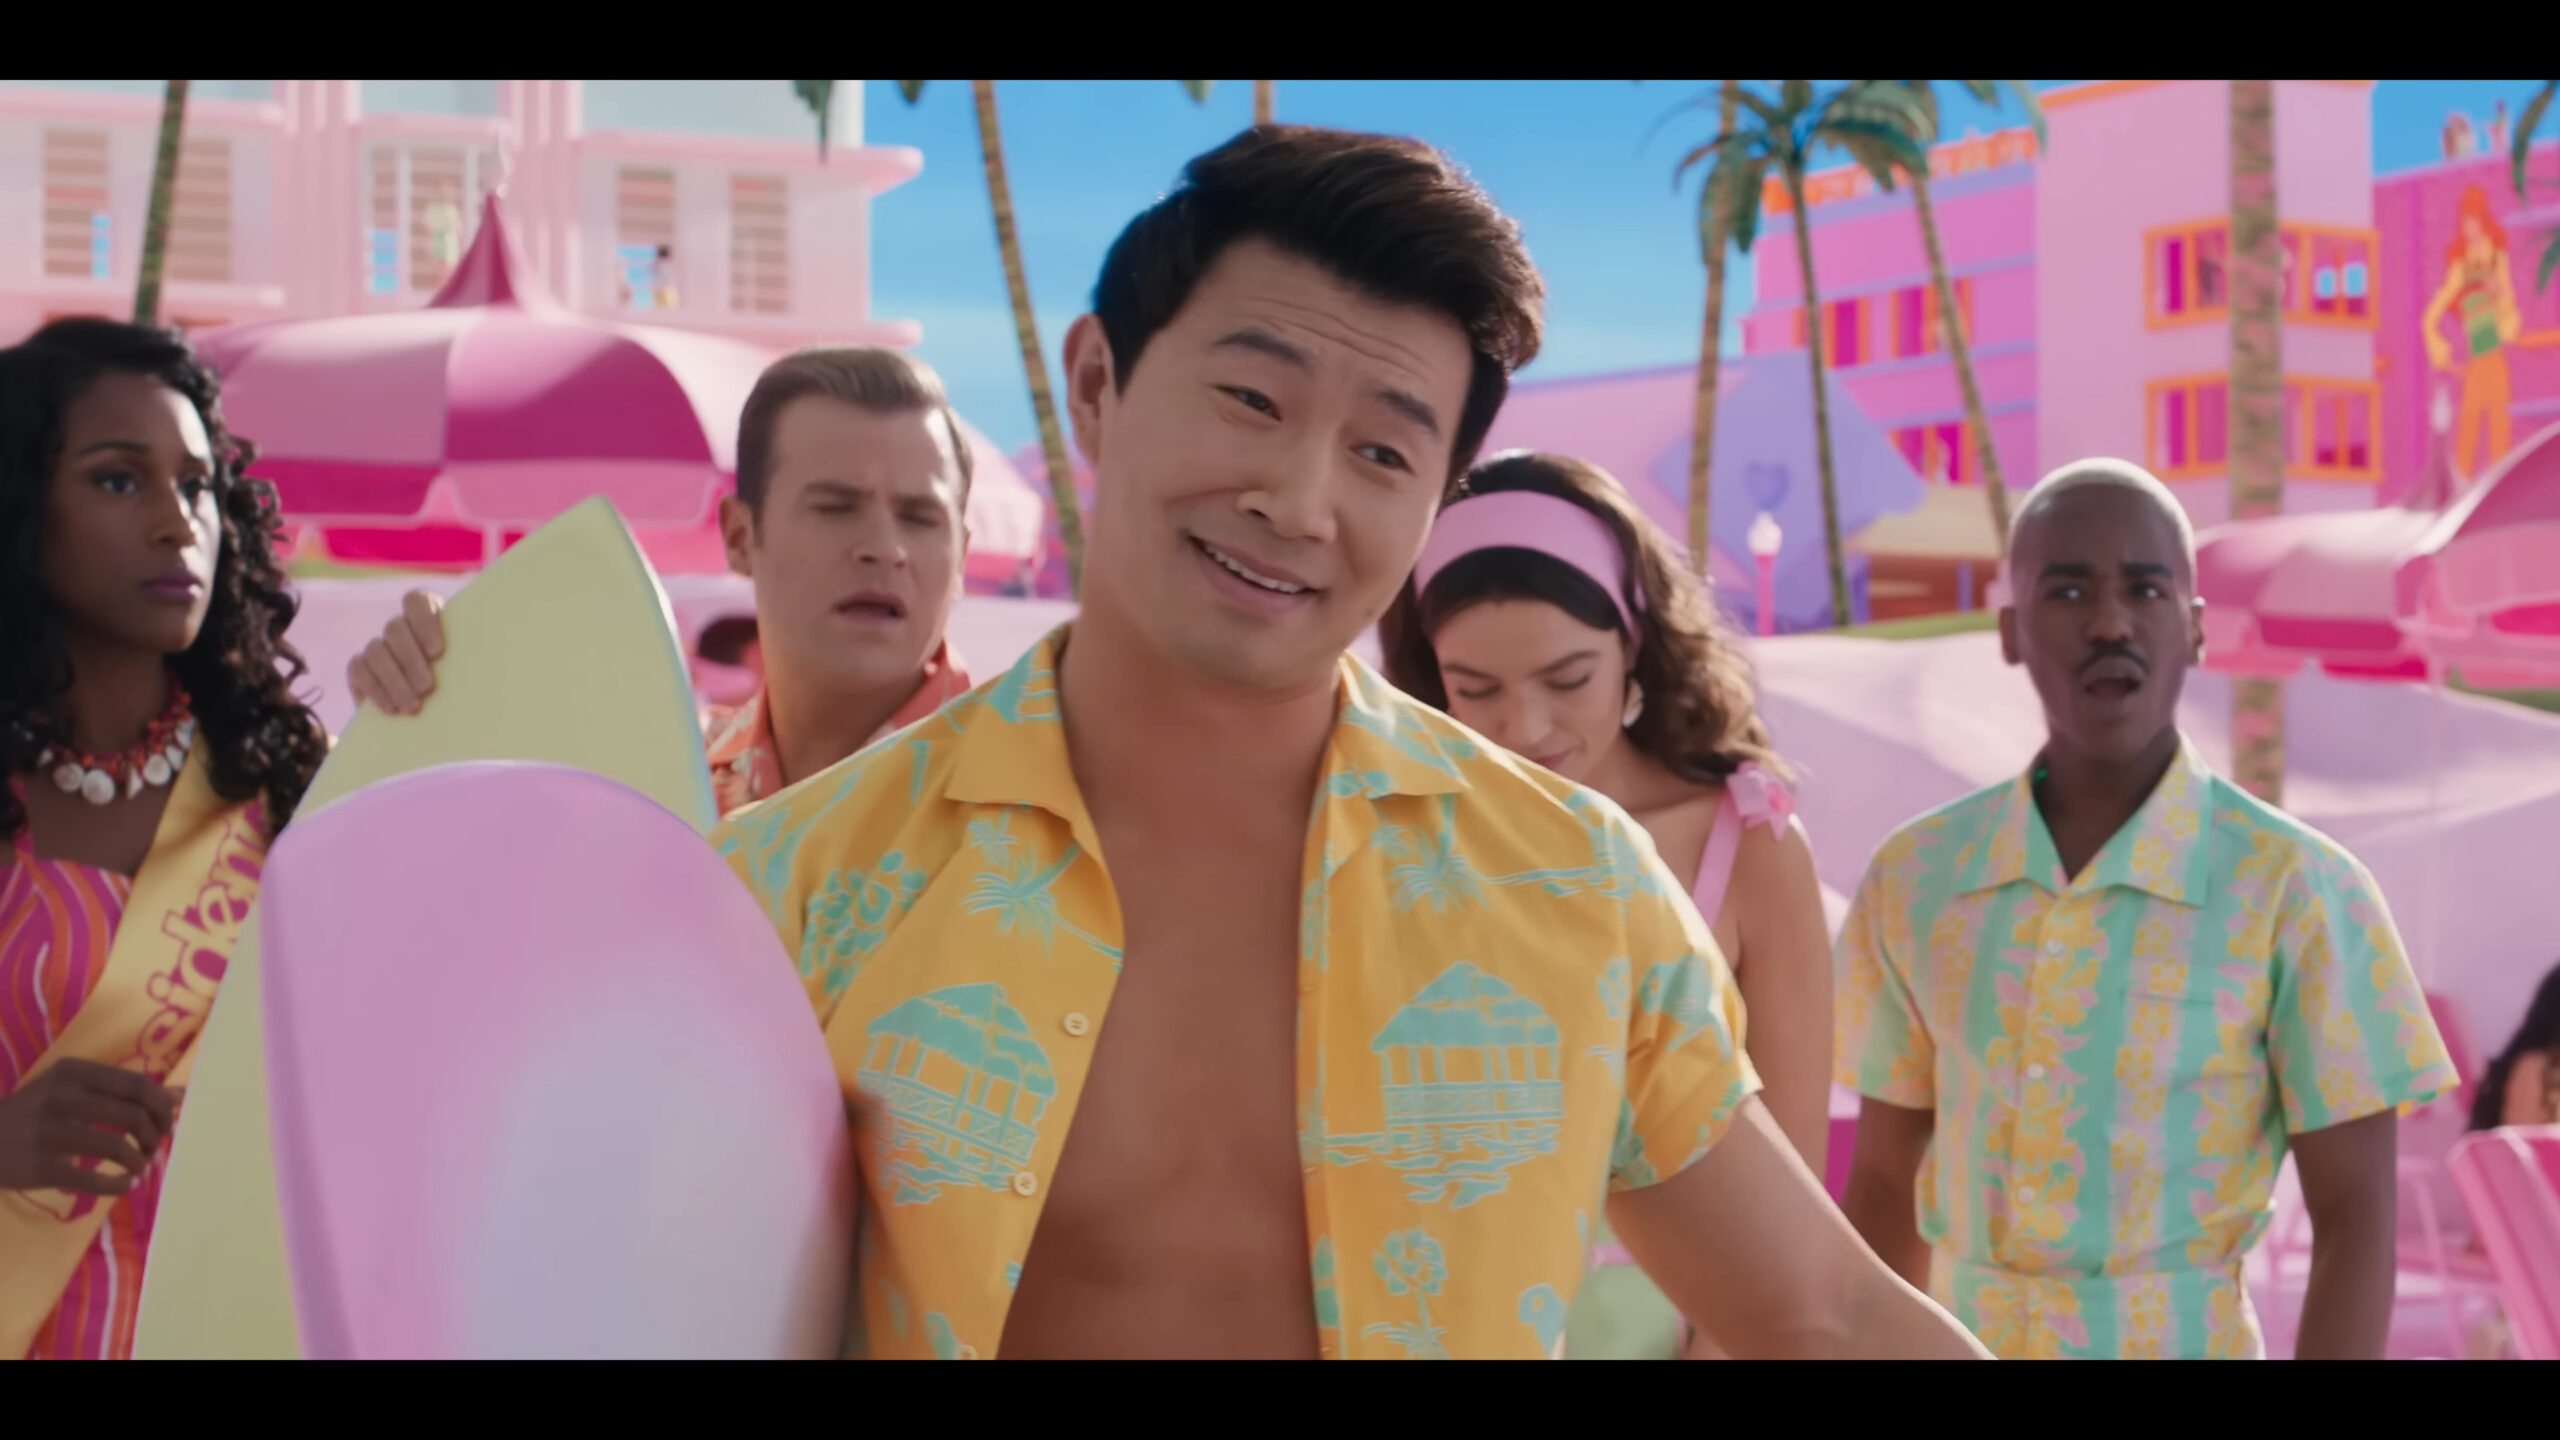 Ken 2 (Simu Liu) challenges Ken (Ryan Gosling) in Barbie (2023), Warner Bros. Pictures